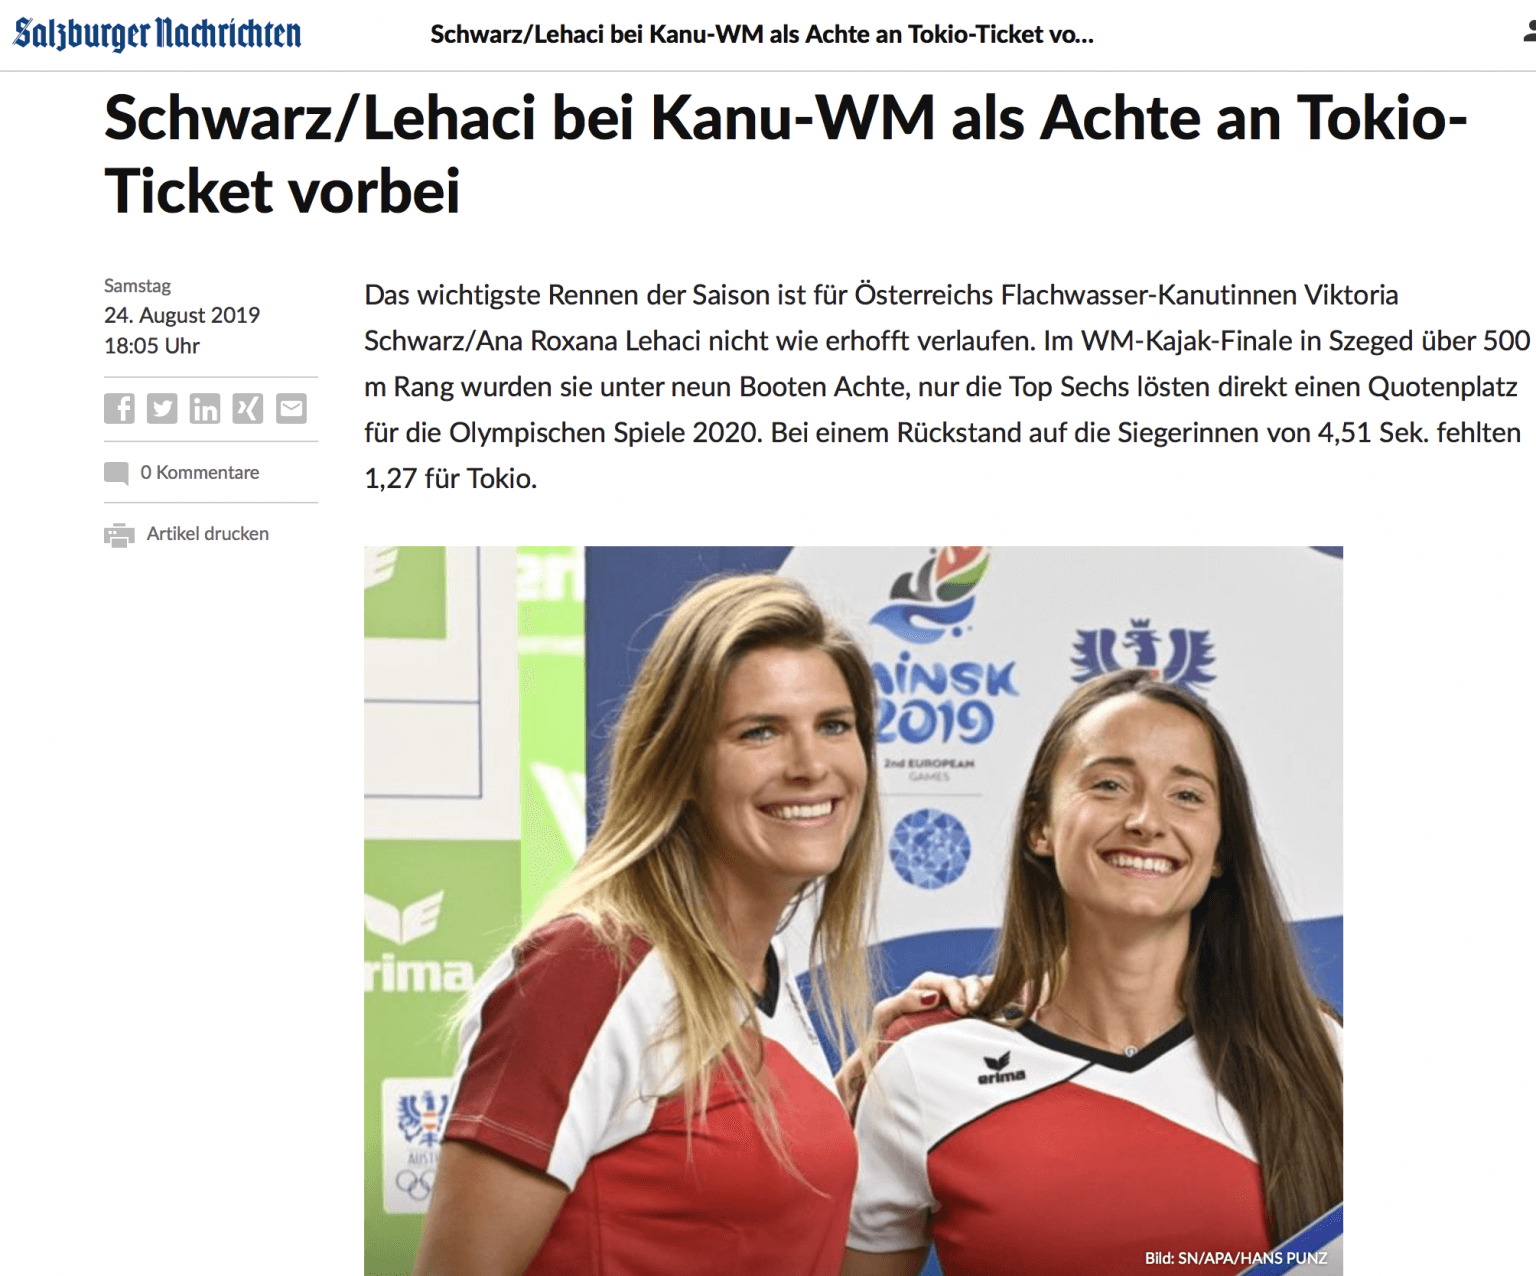 Schwarz/Lehaci bei Kanu-WM als Achte an Tokio-Ticket vorbei